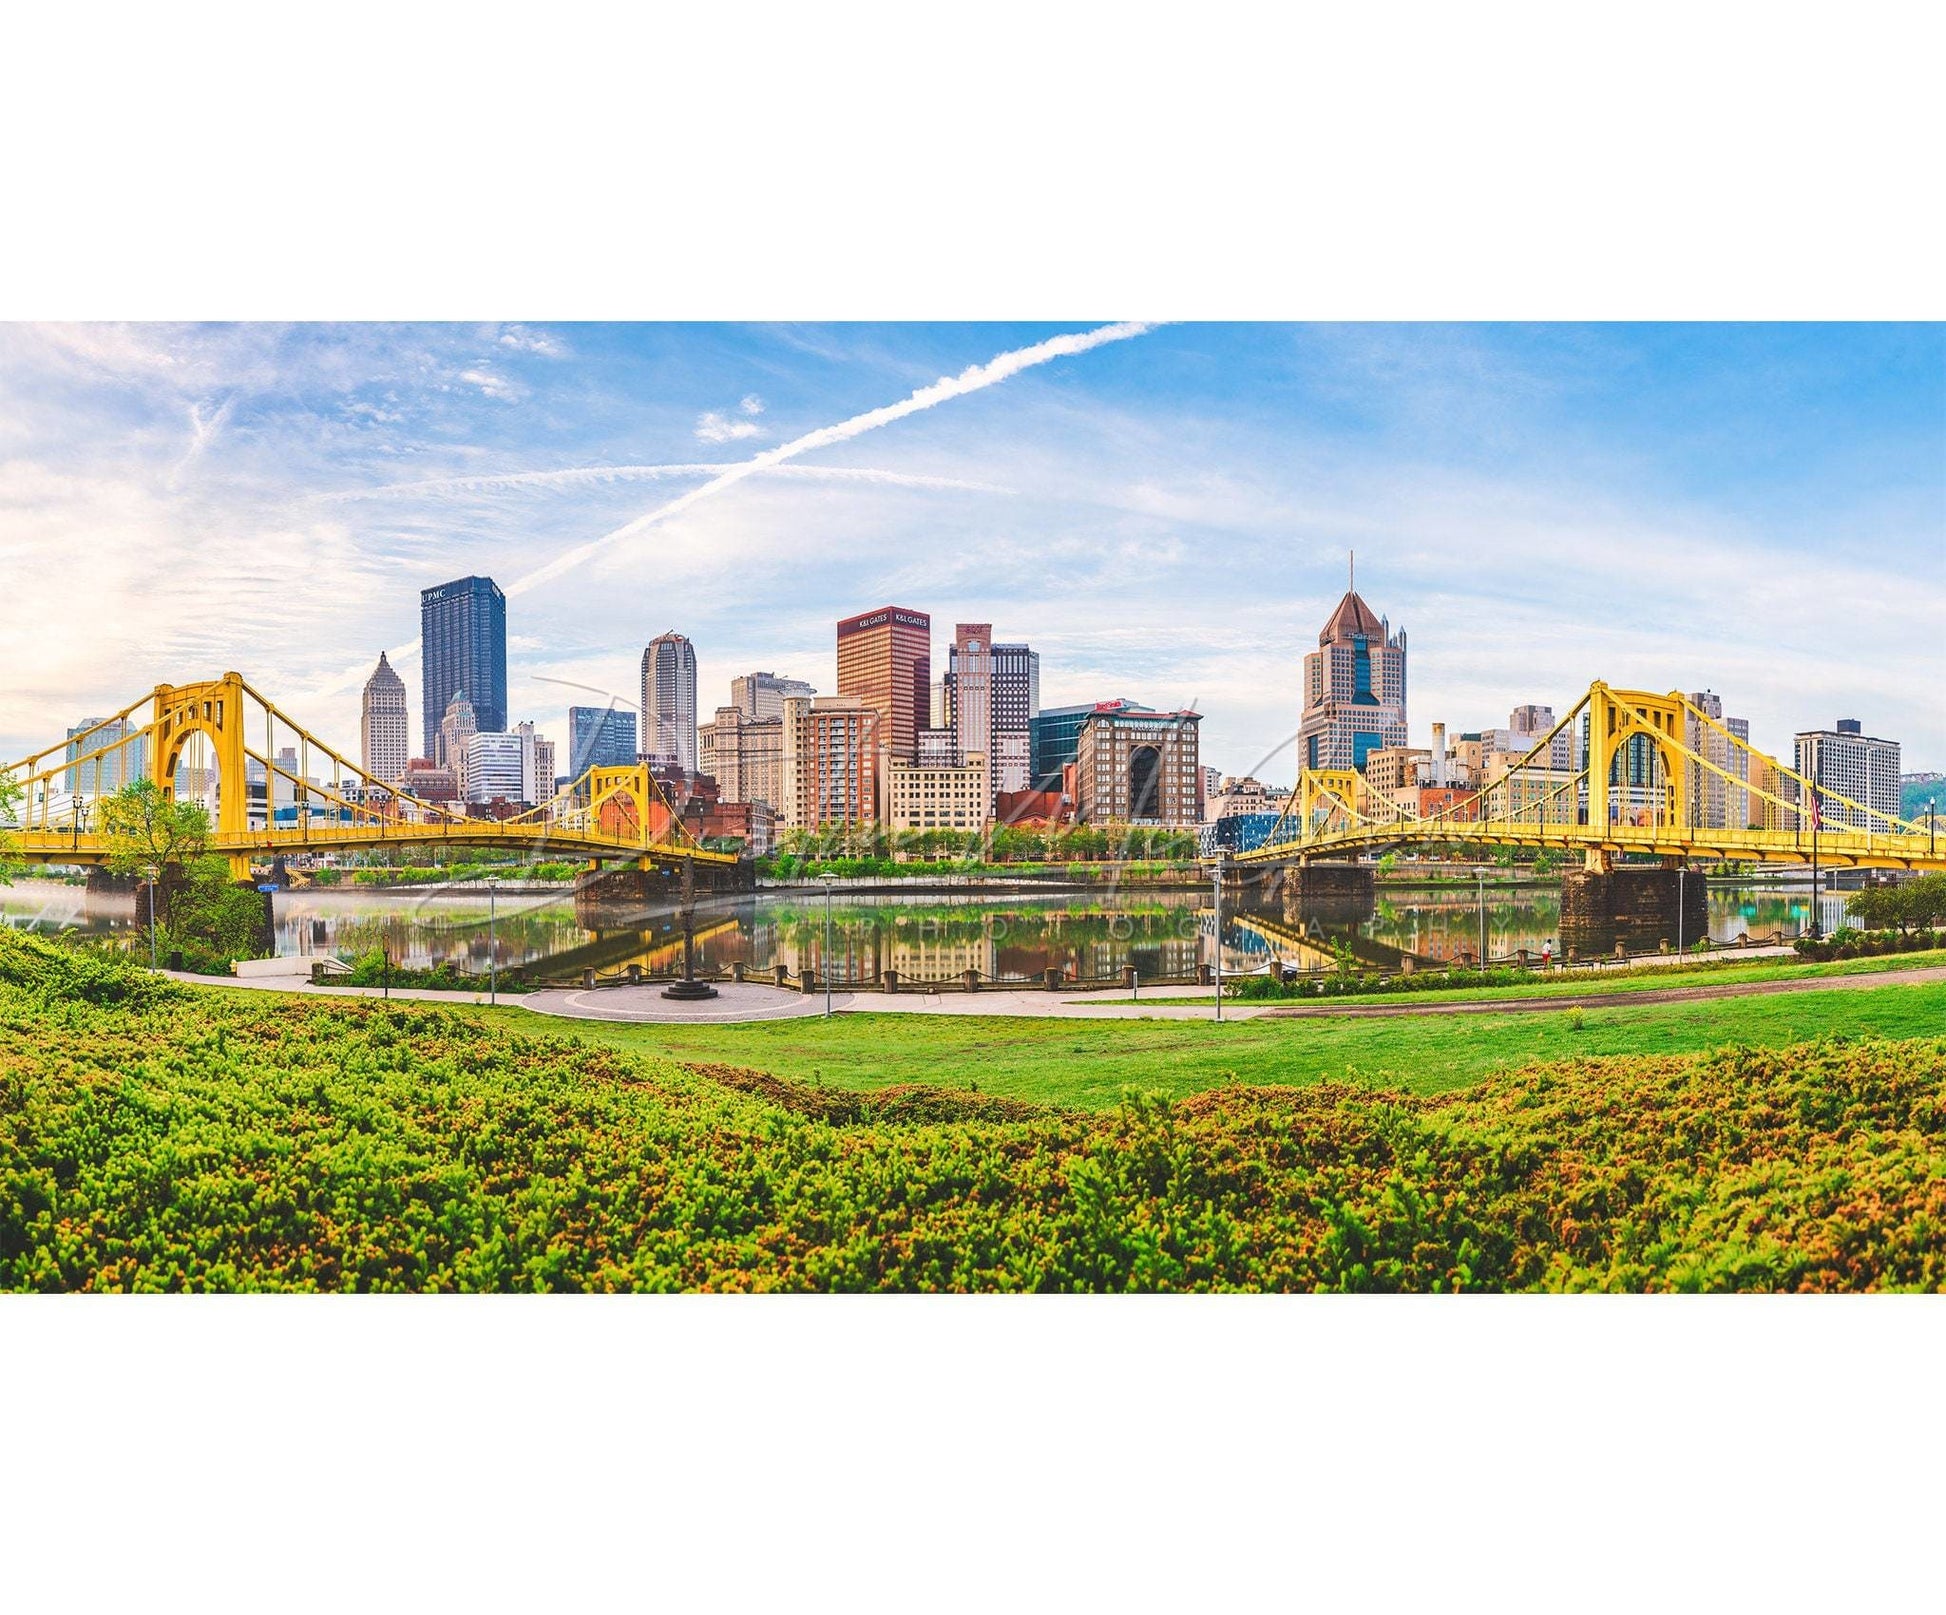 Panoramic Photo Of The Pittsburgh Skyline